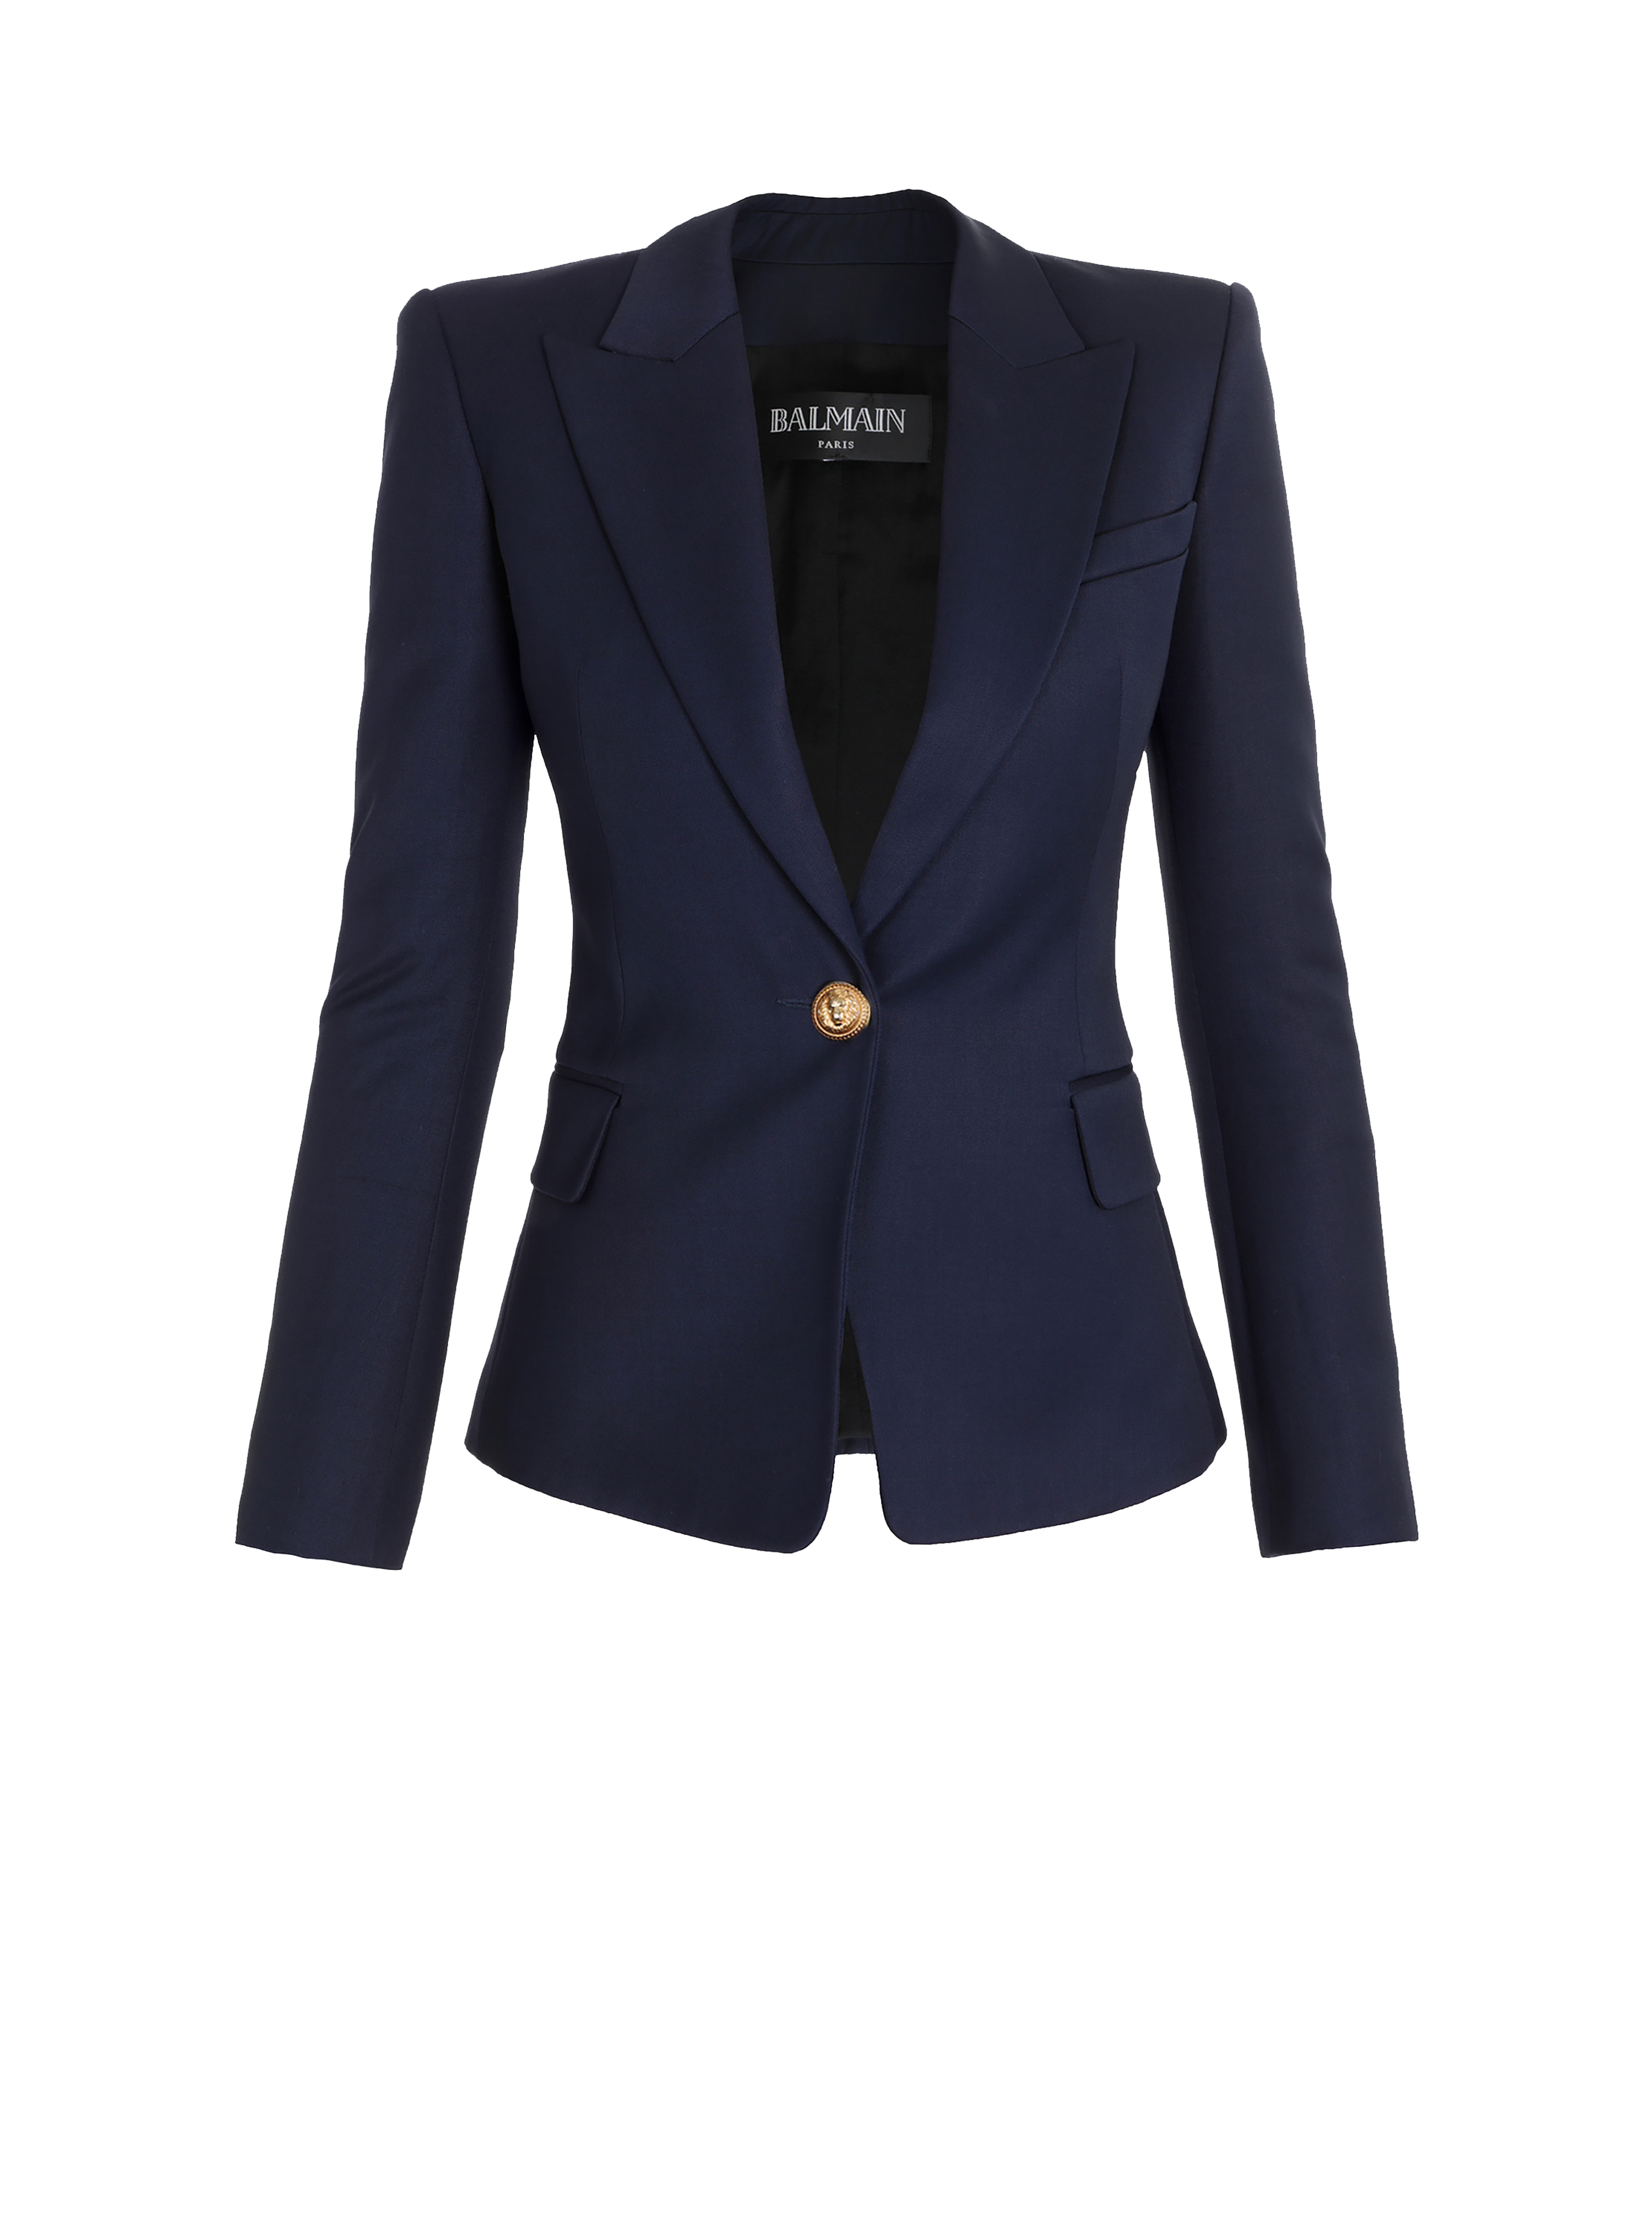 One-button wool blazer, navy